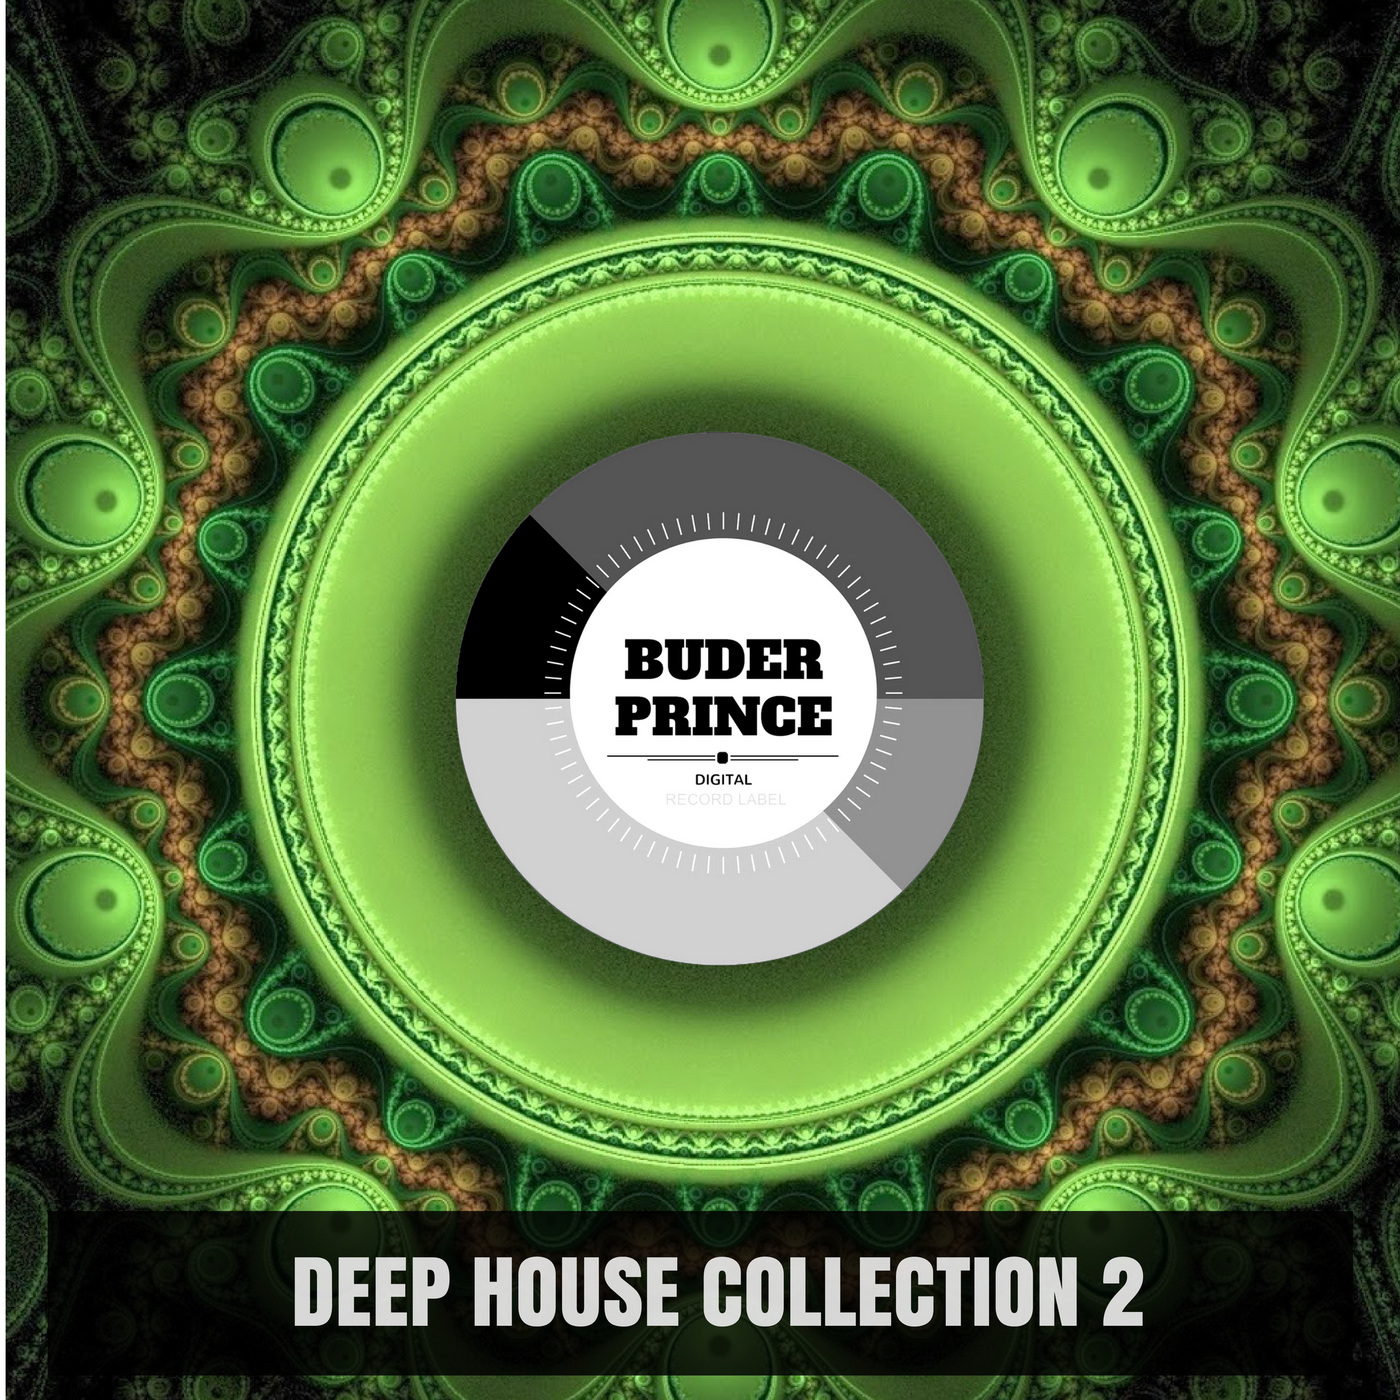 VA - Deep House Collection 2 / Buder Prince Digital